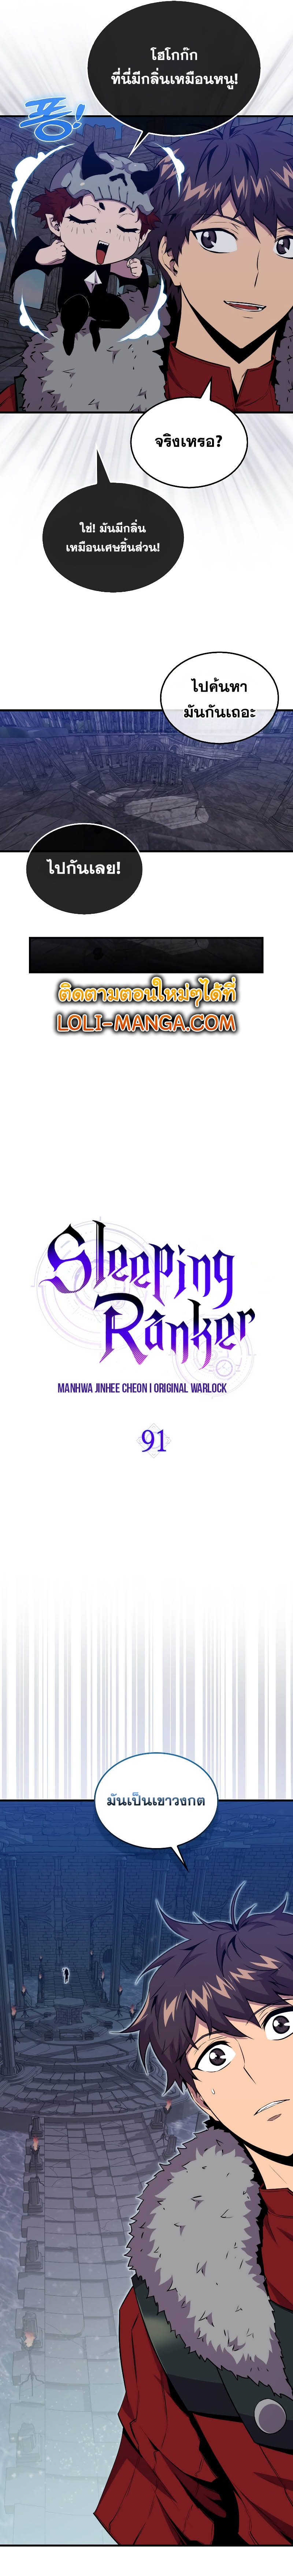 Sleeping Ranker 91 05